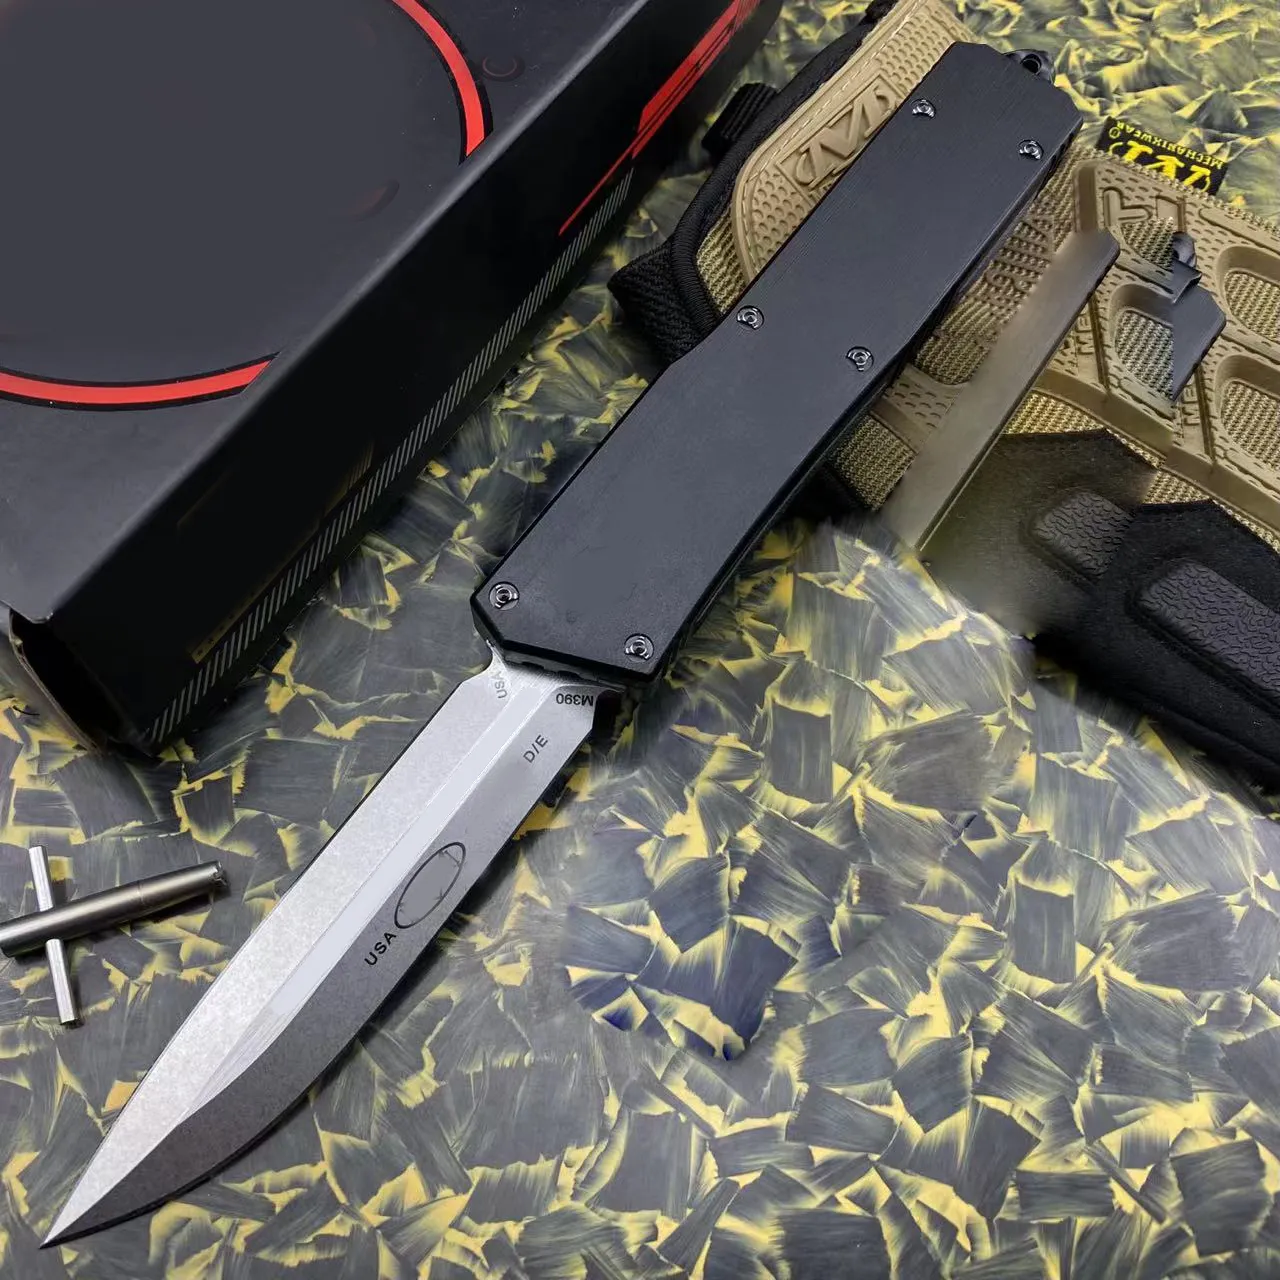 Navy Beetle 2 OTFS Knife Black Brushed Aviation Aluminium Alloy Handle D2 Steel Blade Straight Knife Självförsvar EDC Knivtaktiskt verktyg